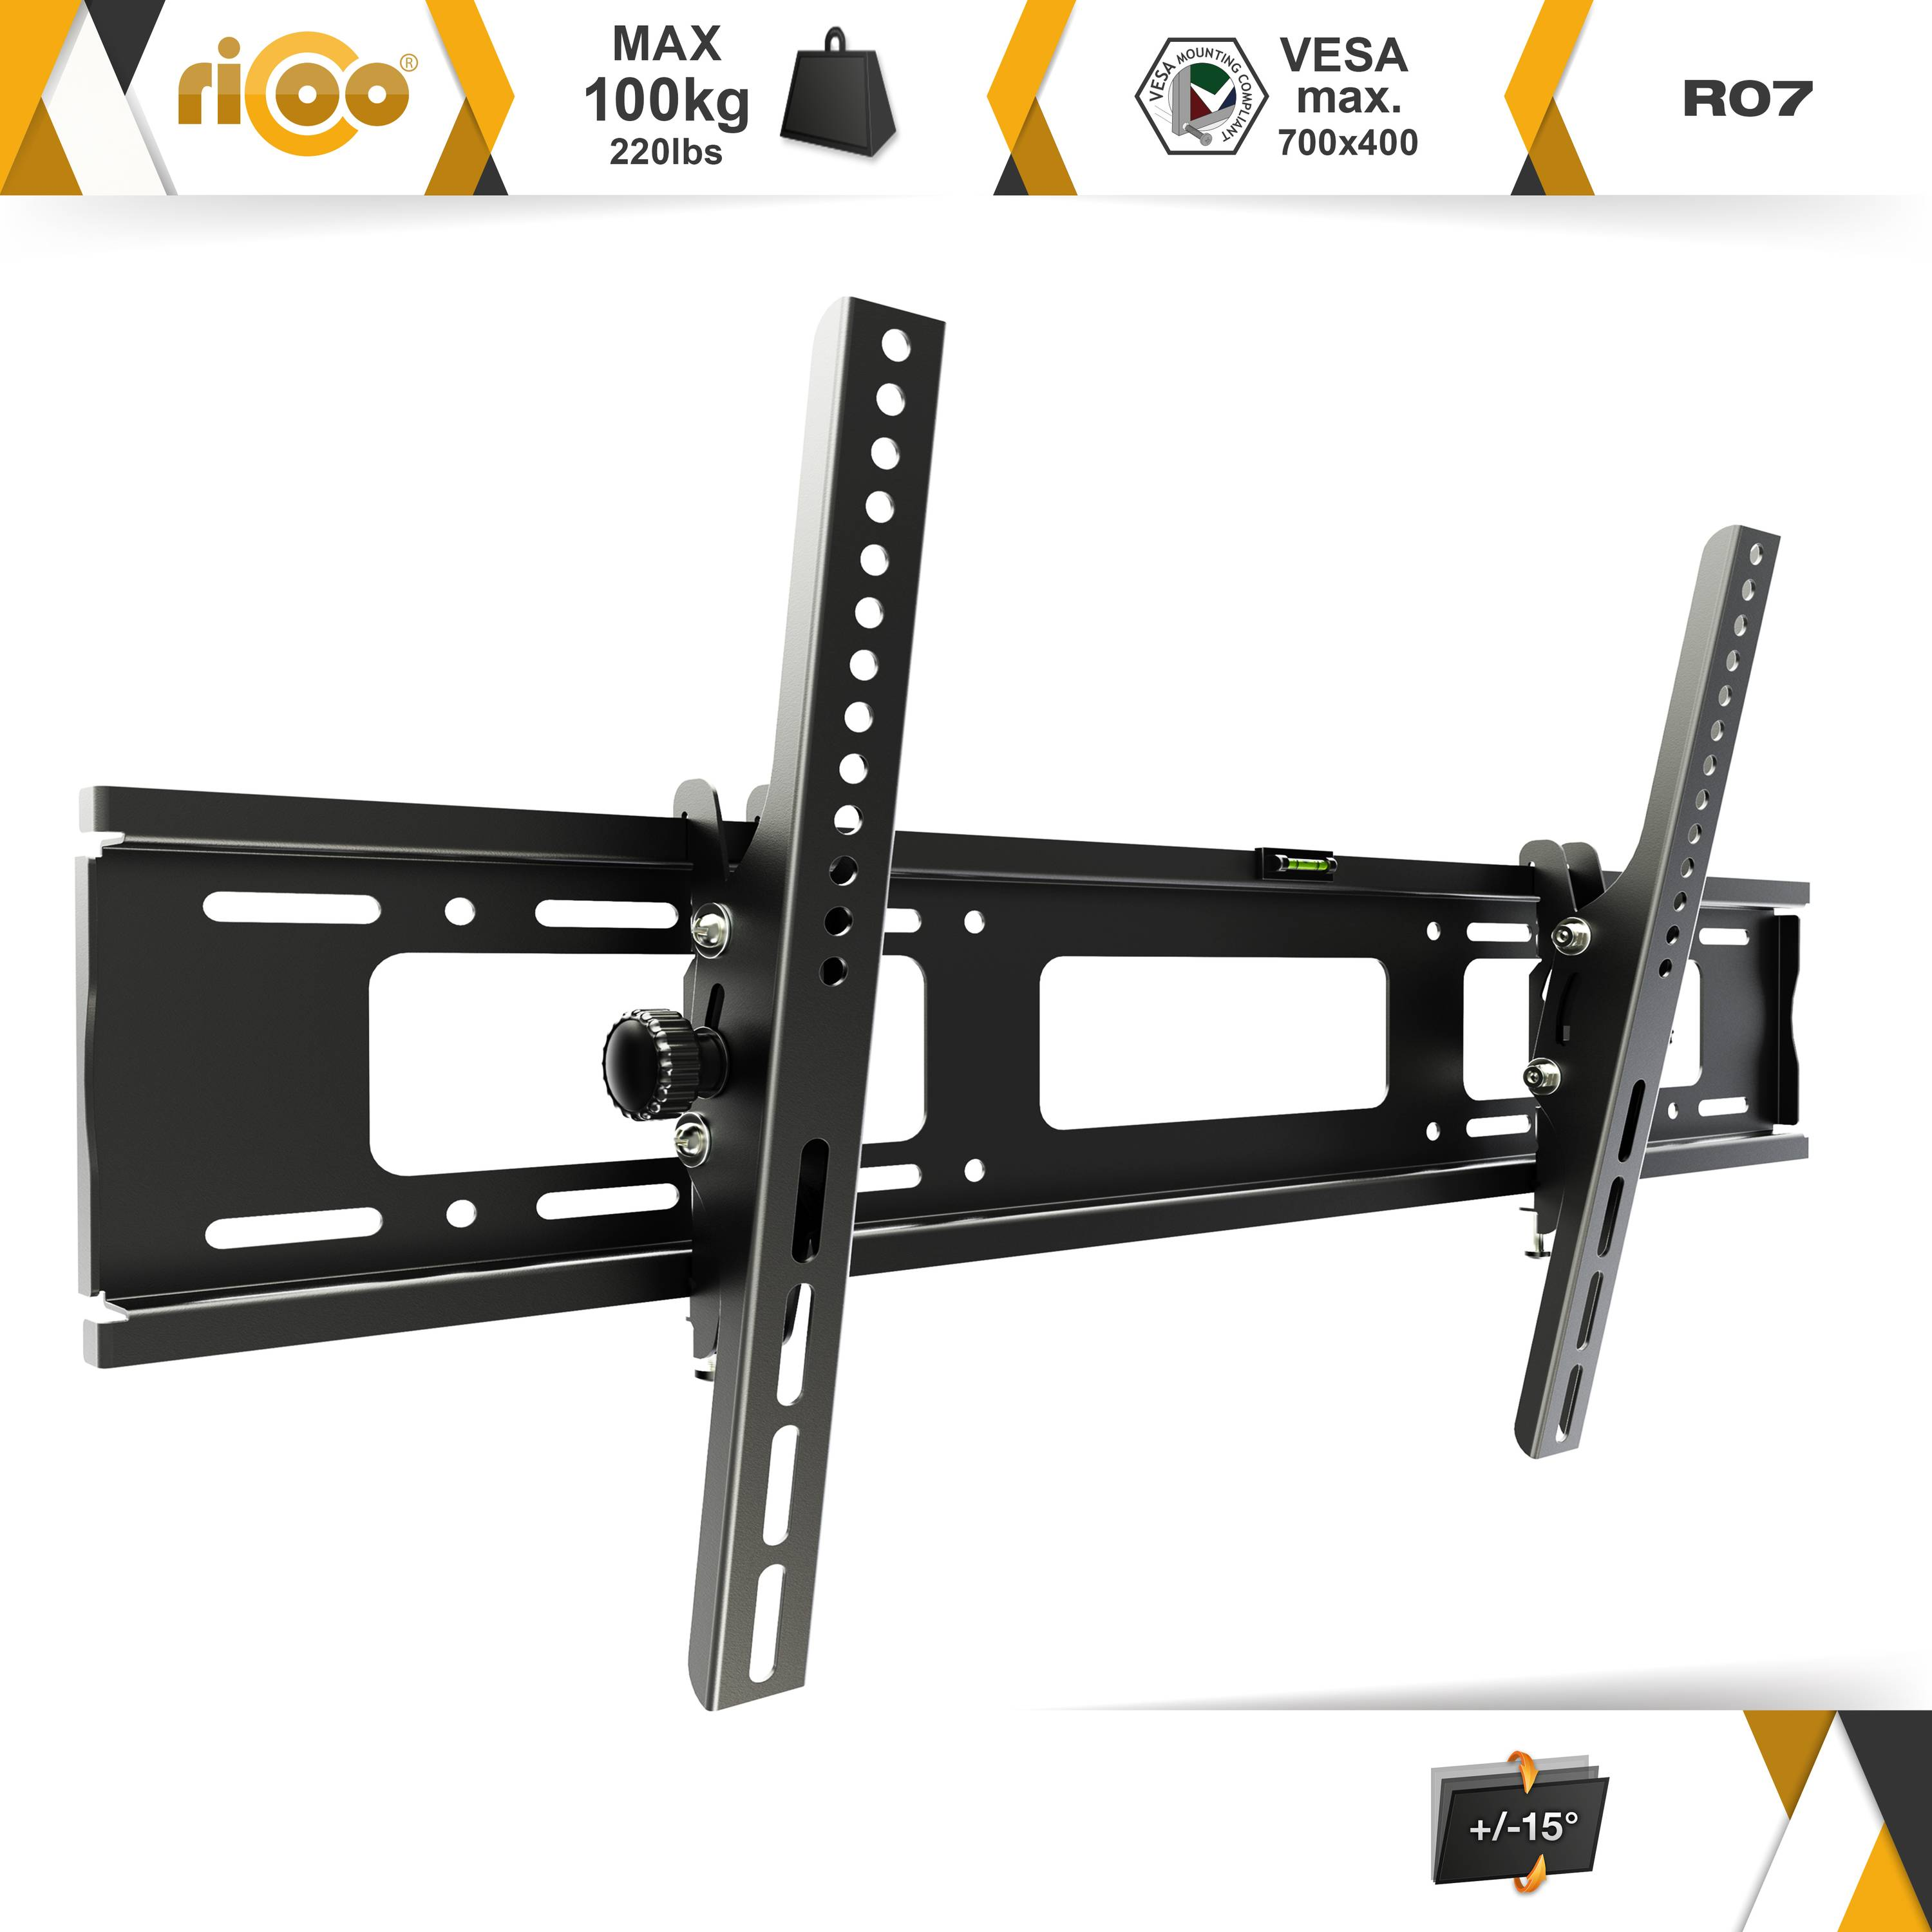 400 Schwarz R07 für flach TV neigbar 600 x Halterung Wand curved bis universal Wandhalterung, RICOO VESA auch Fernseher